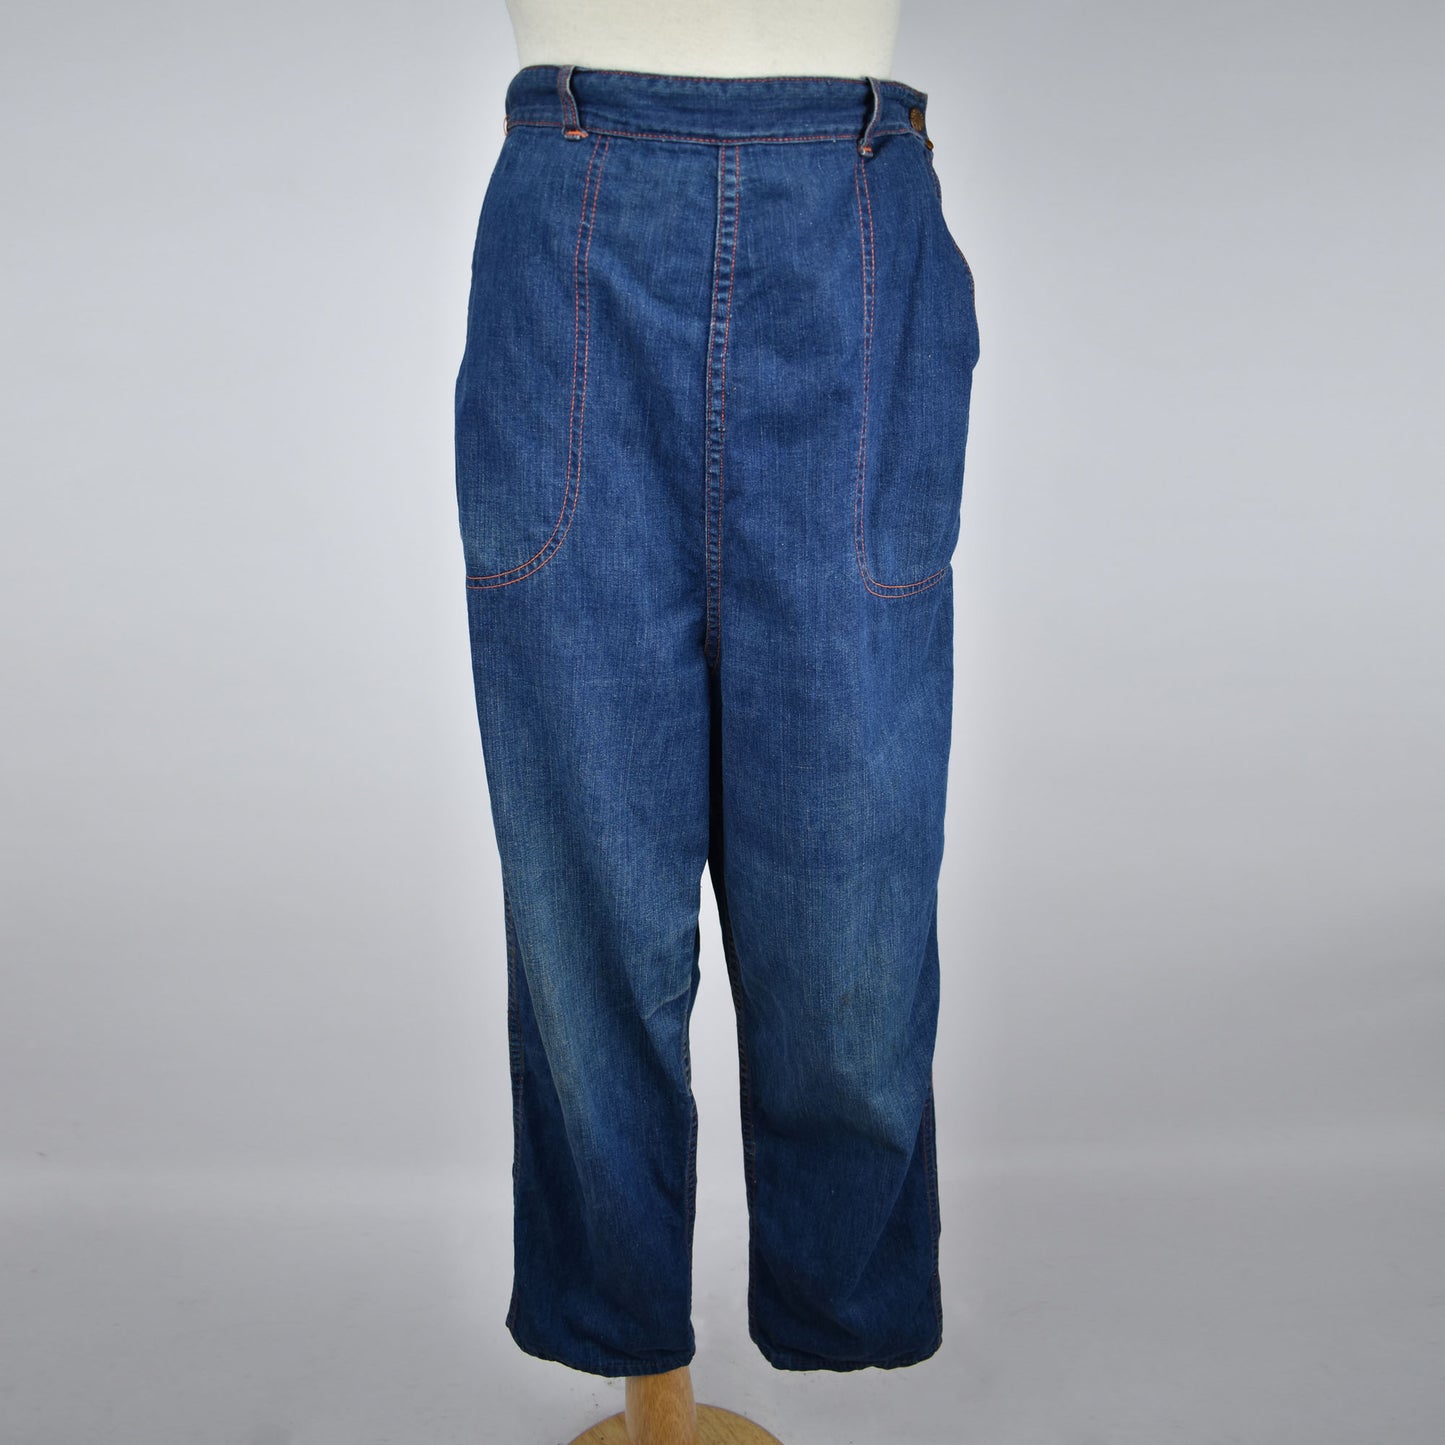 Vintage 50s / 60s Women's Denim Jeans - Indigo with Orange Stitching Detail- Size 32 - Size Serval Zipper